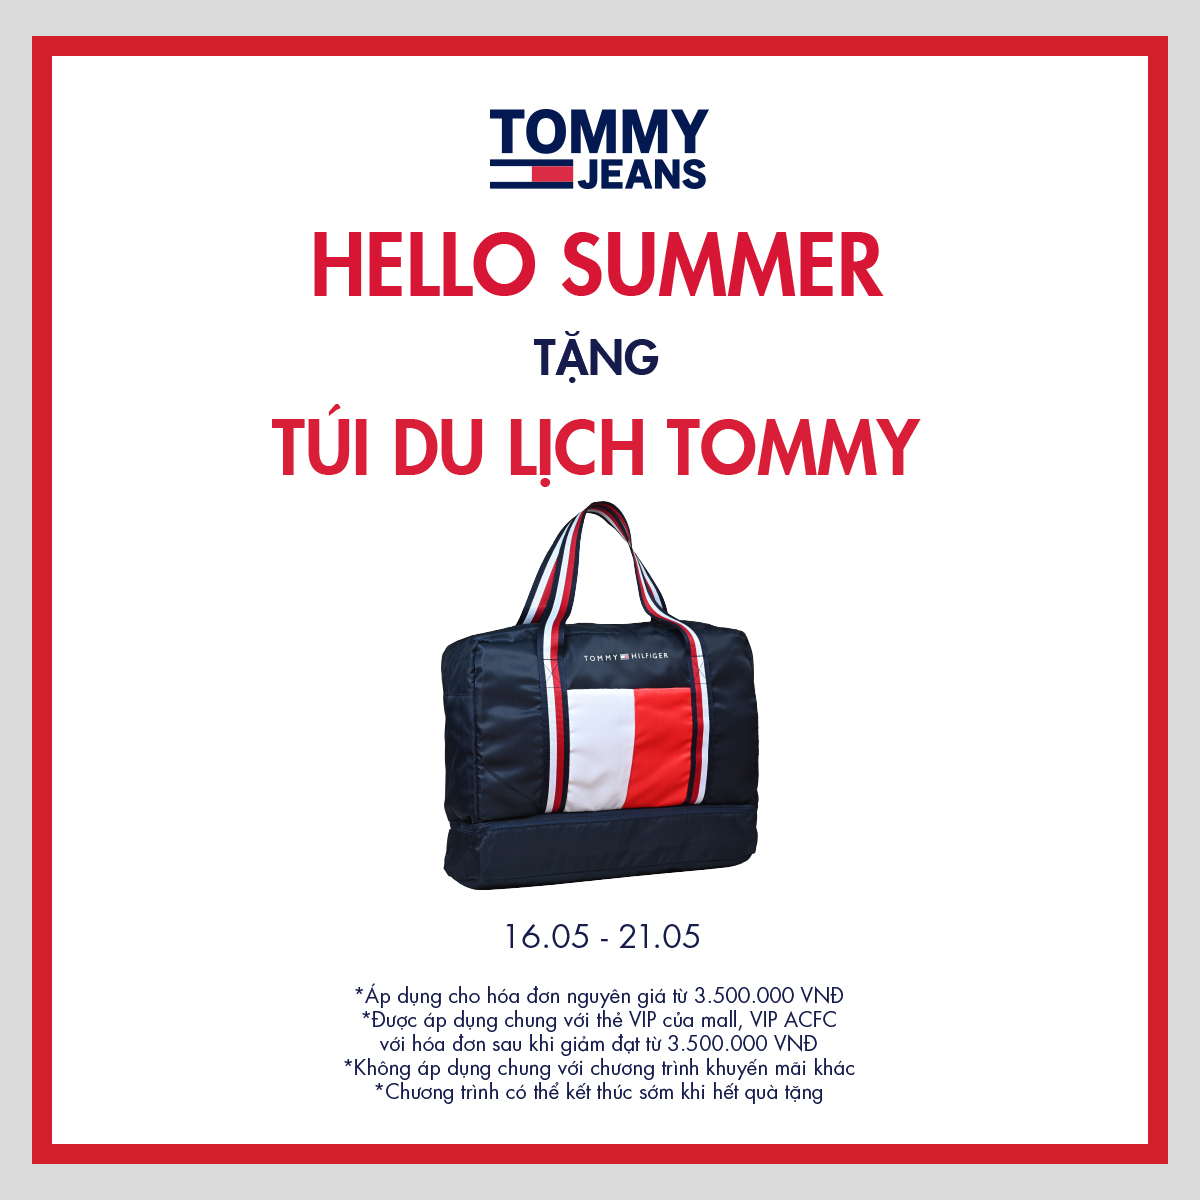 TOMMY HILFIGER | HELLO SUMMER - TẶNG TÚI DU LỊCH TOMMY